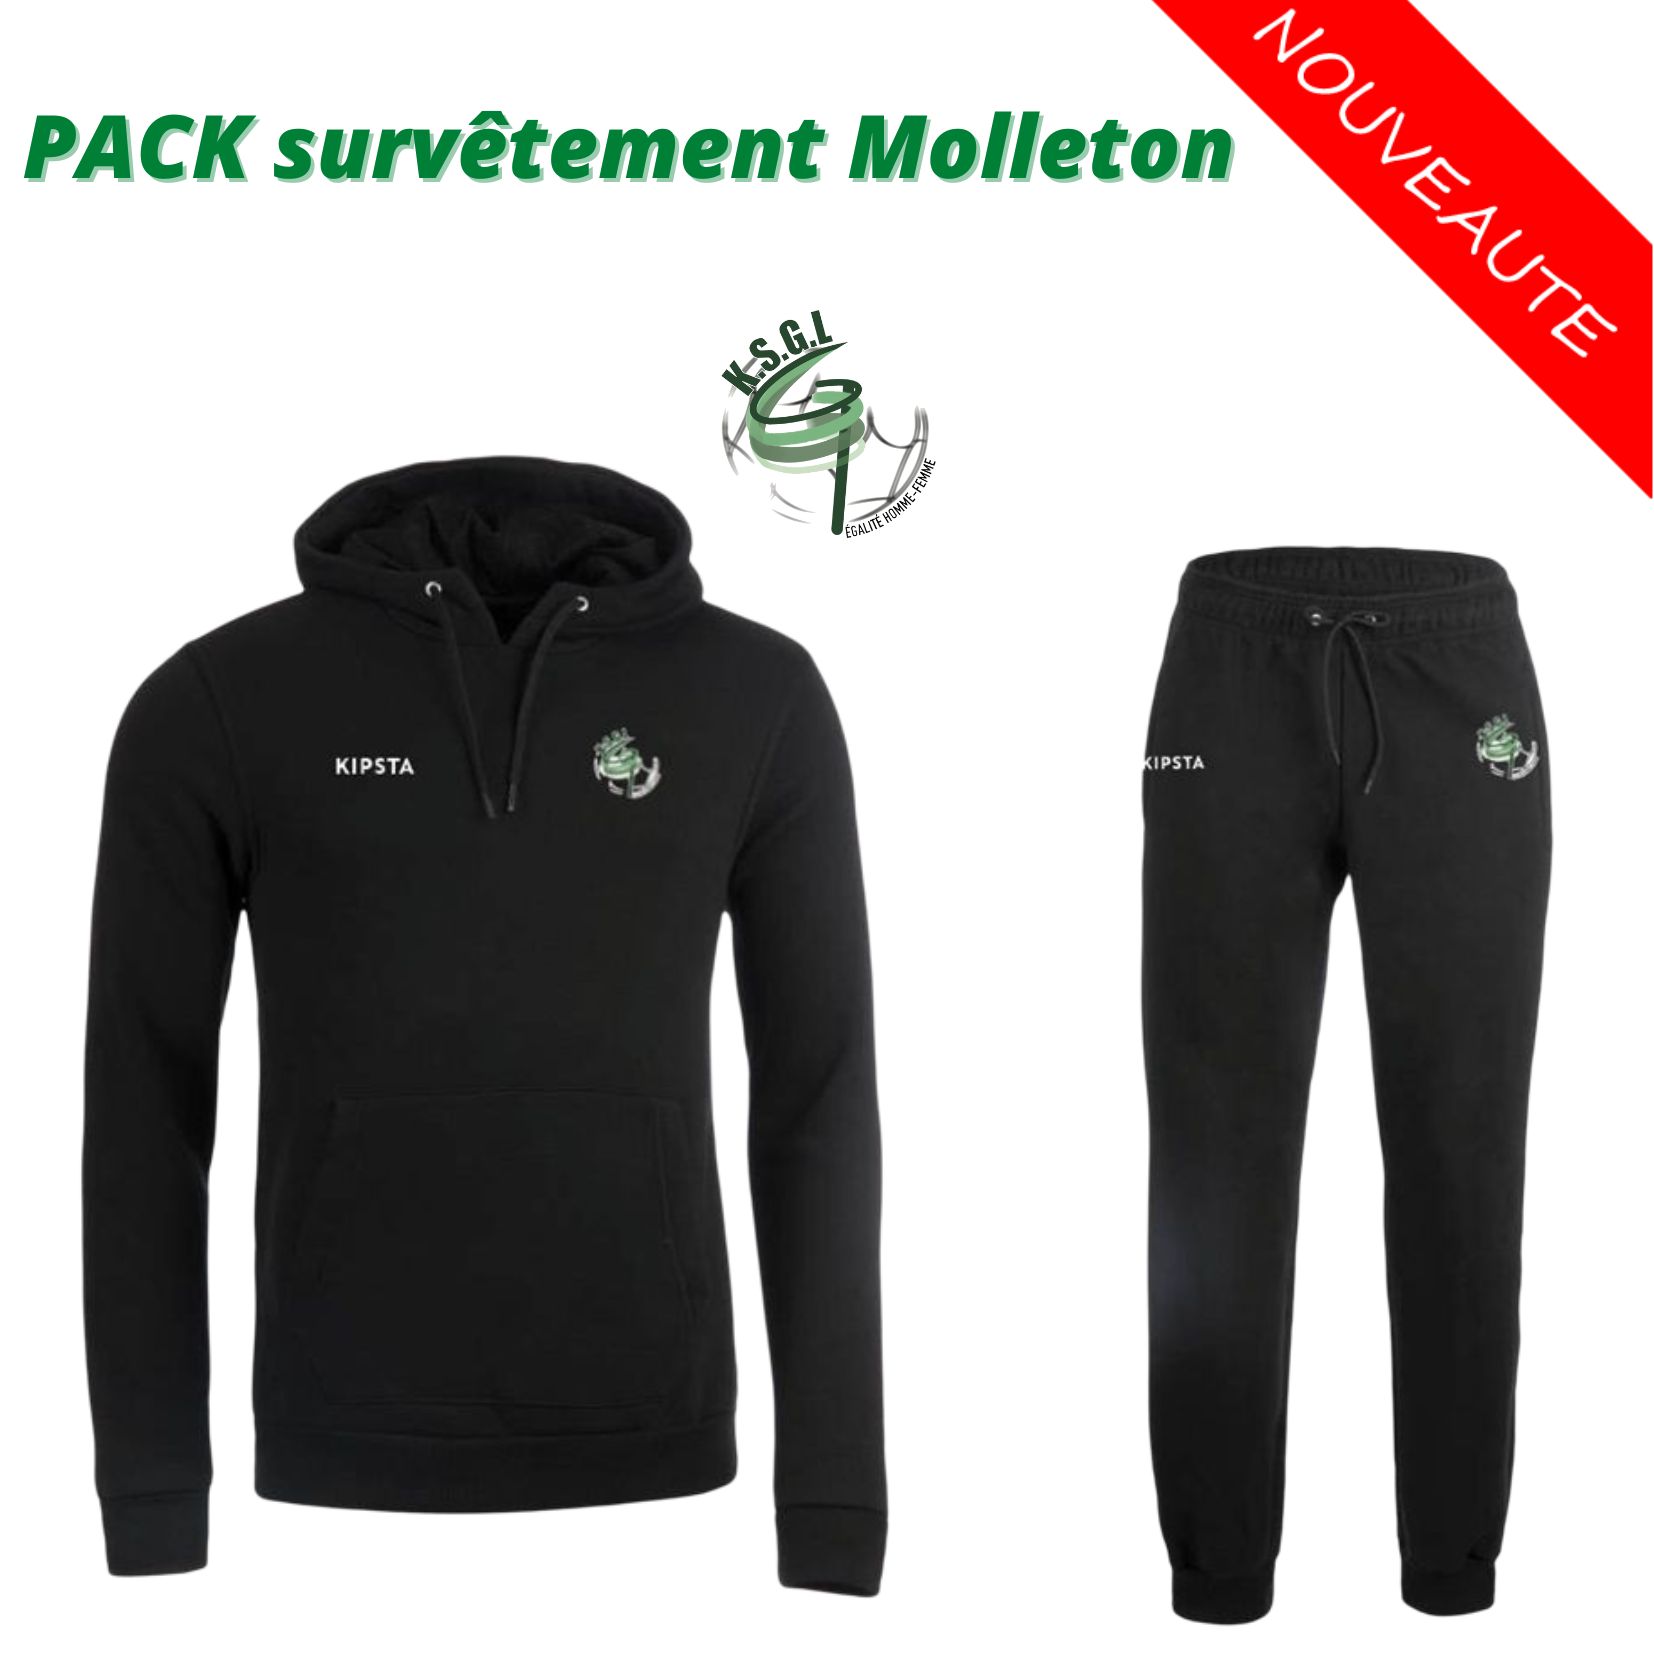 Pack Survêtement Molleton / 81 €